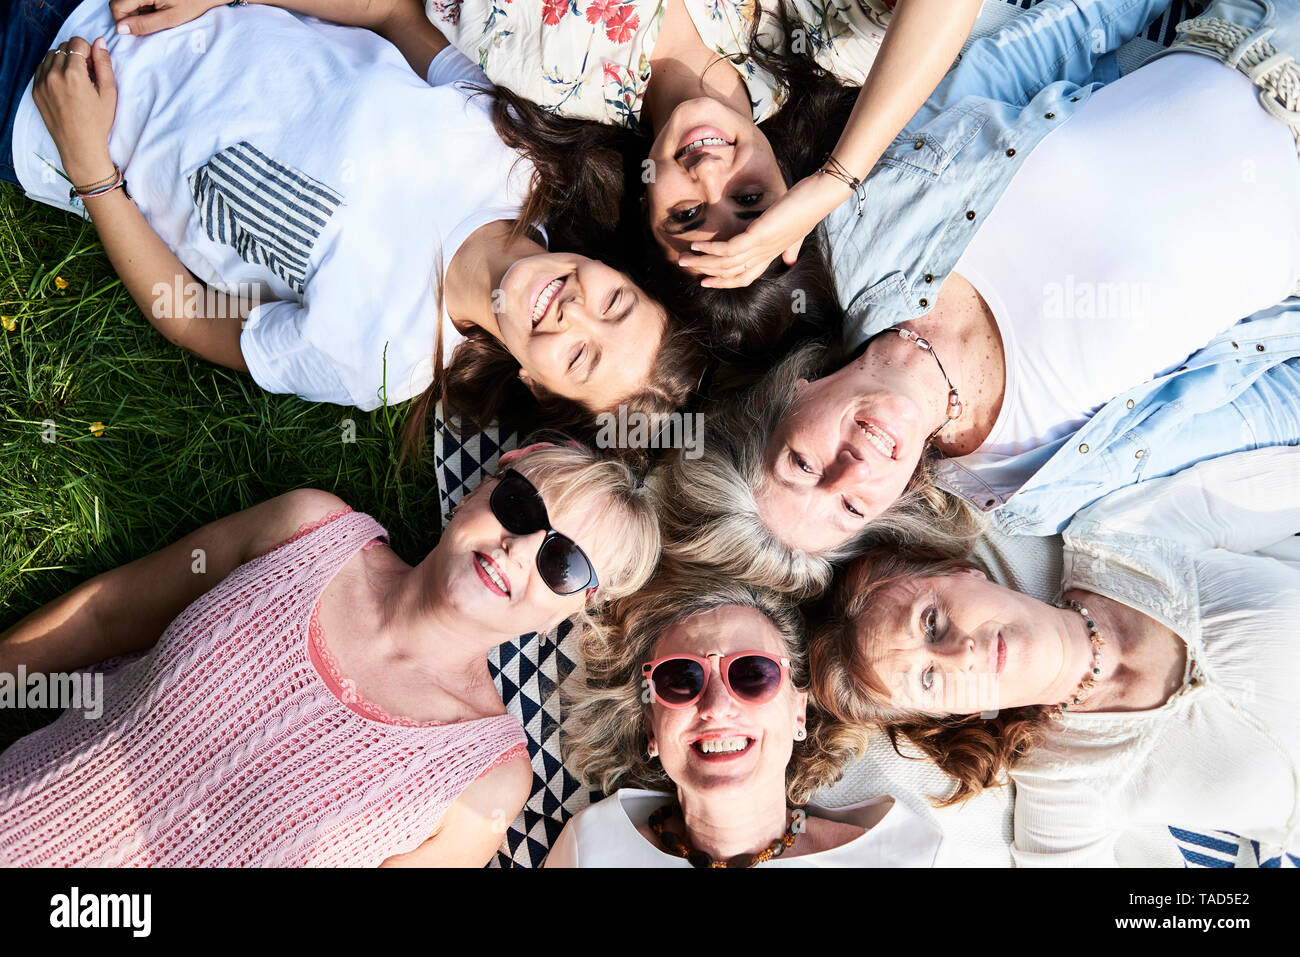 Vista superior del grupo de mujeres feliz tumbado en una pradera Foto de stock